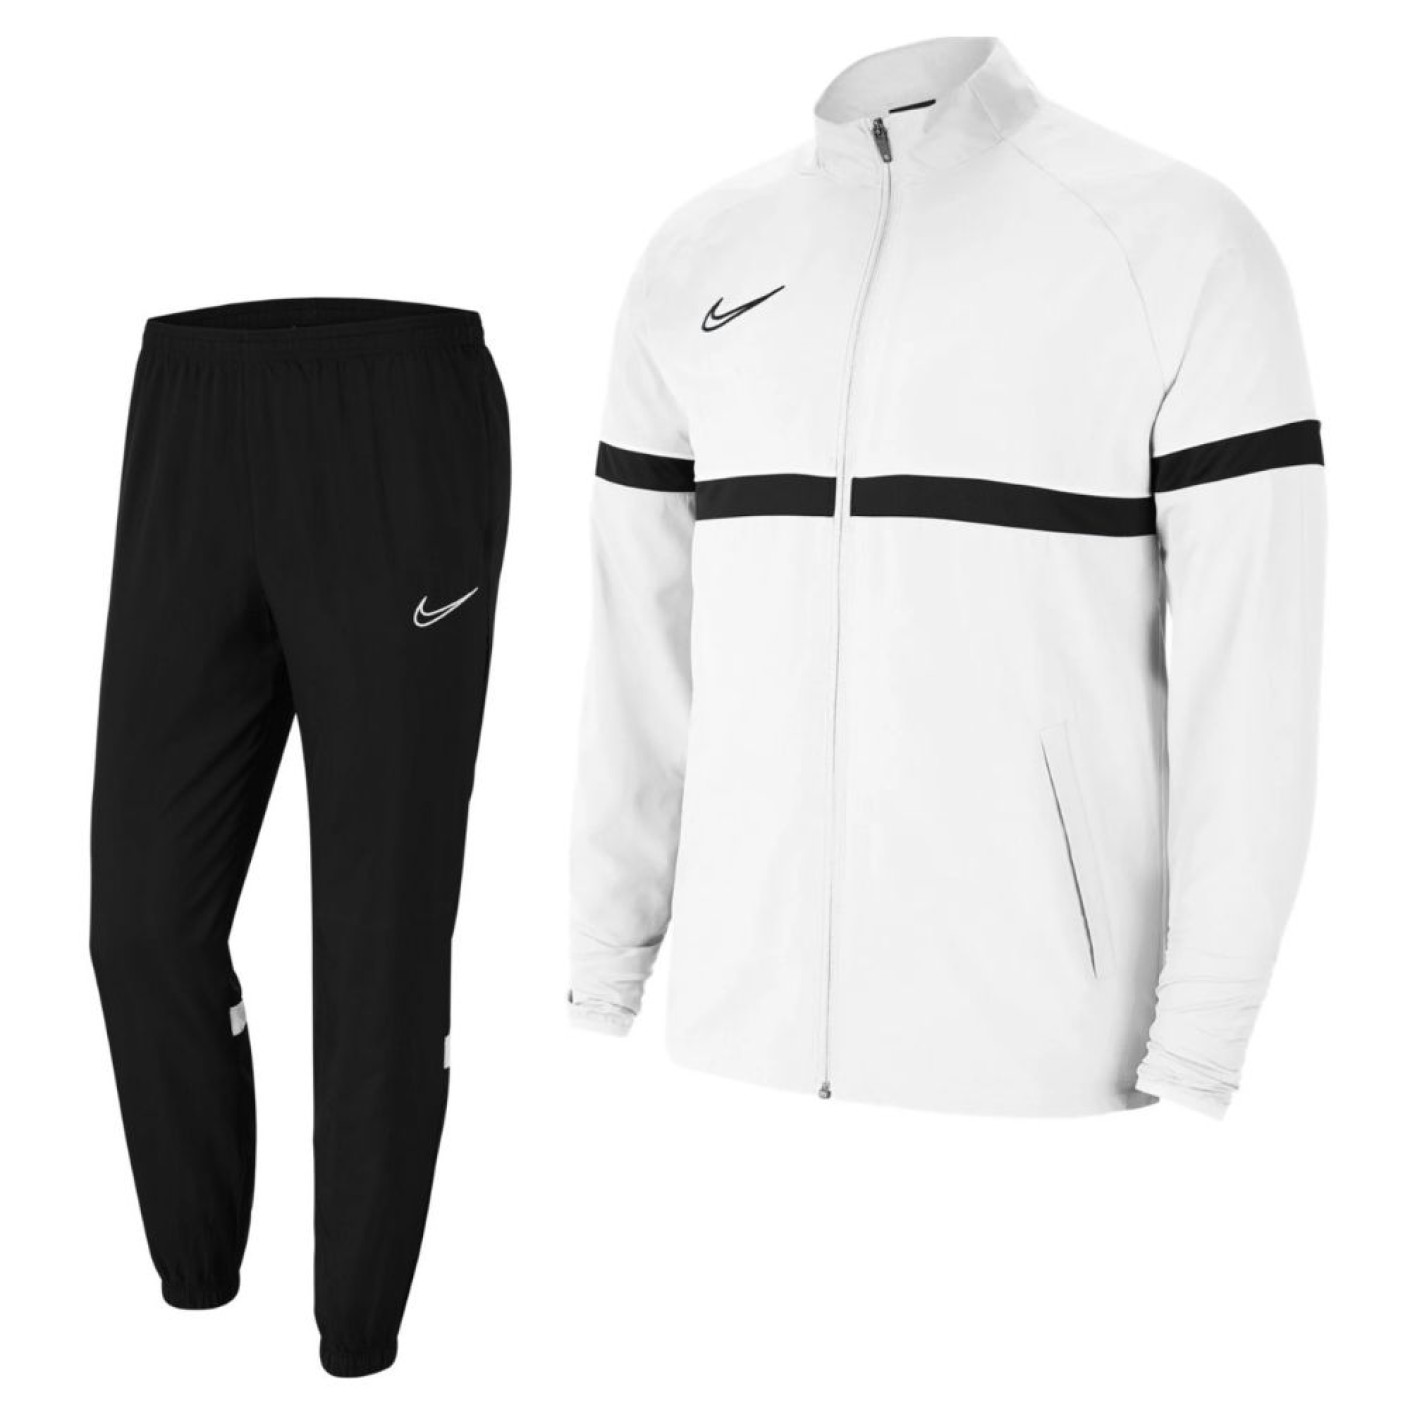 Arbeid Moederland Luidspreker Nike Dri-Fit Academy 21 Woven Trainingspak Wit Zwart